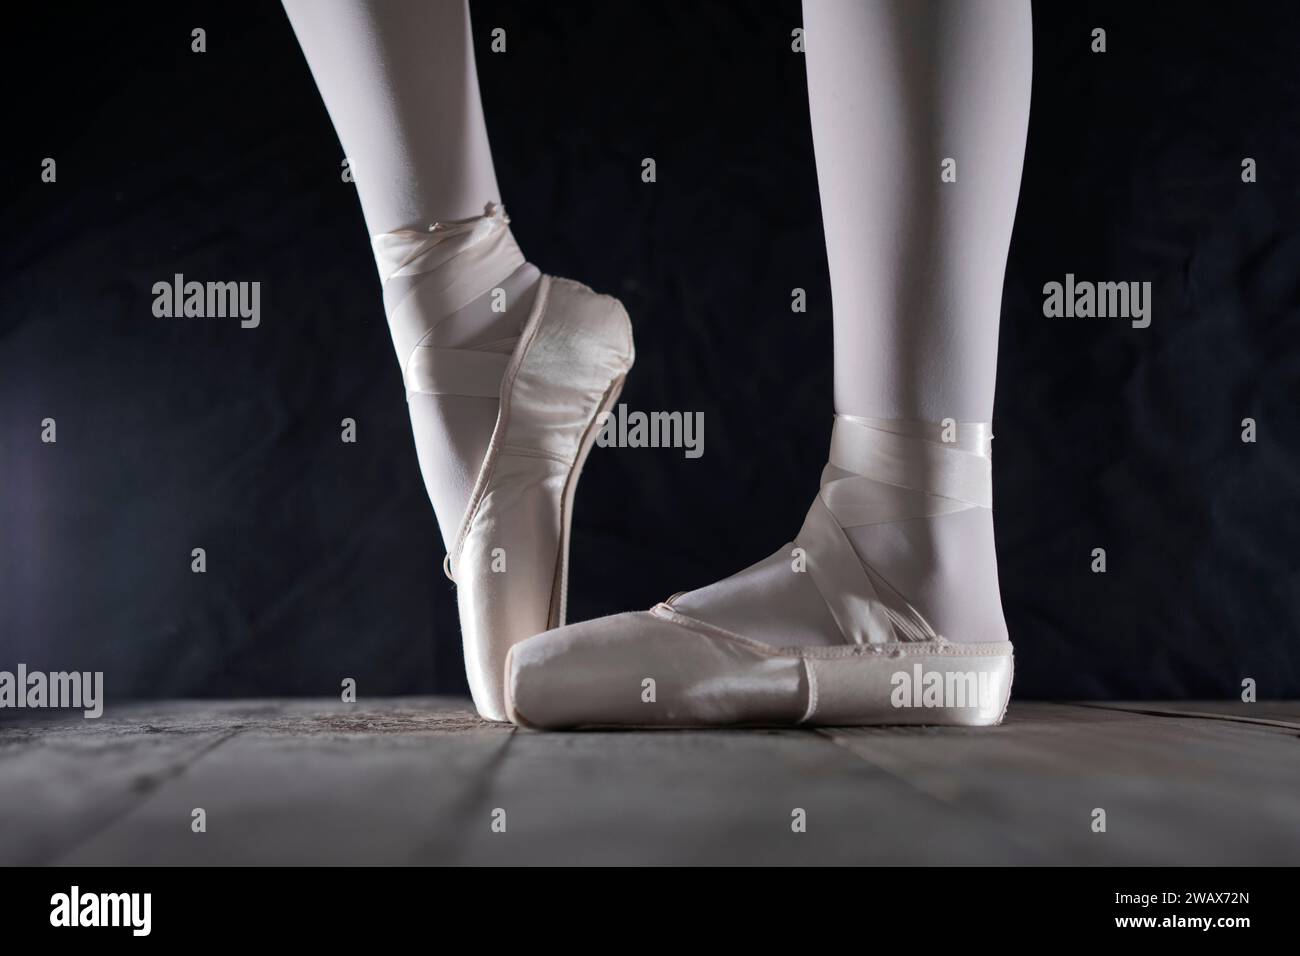 dettaglio dei piedi della ballerina di balletto femminile in posizione di balletto con scarpa pointe davanti a sfondo scuro Foto Stock